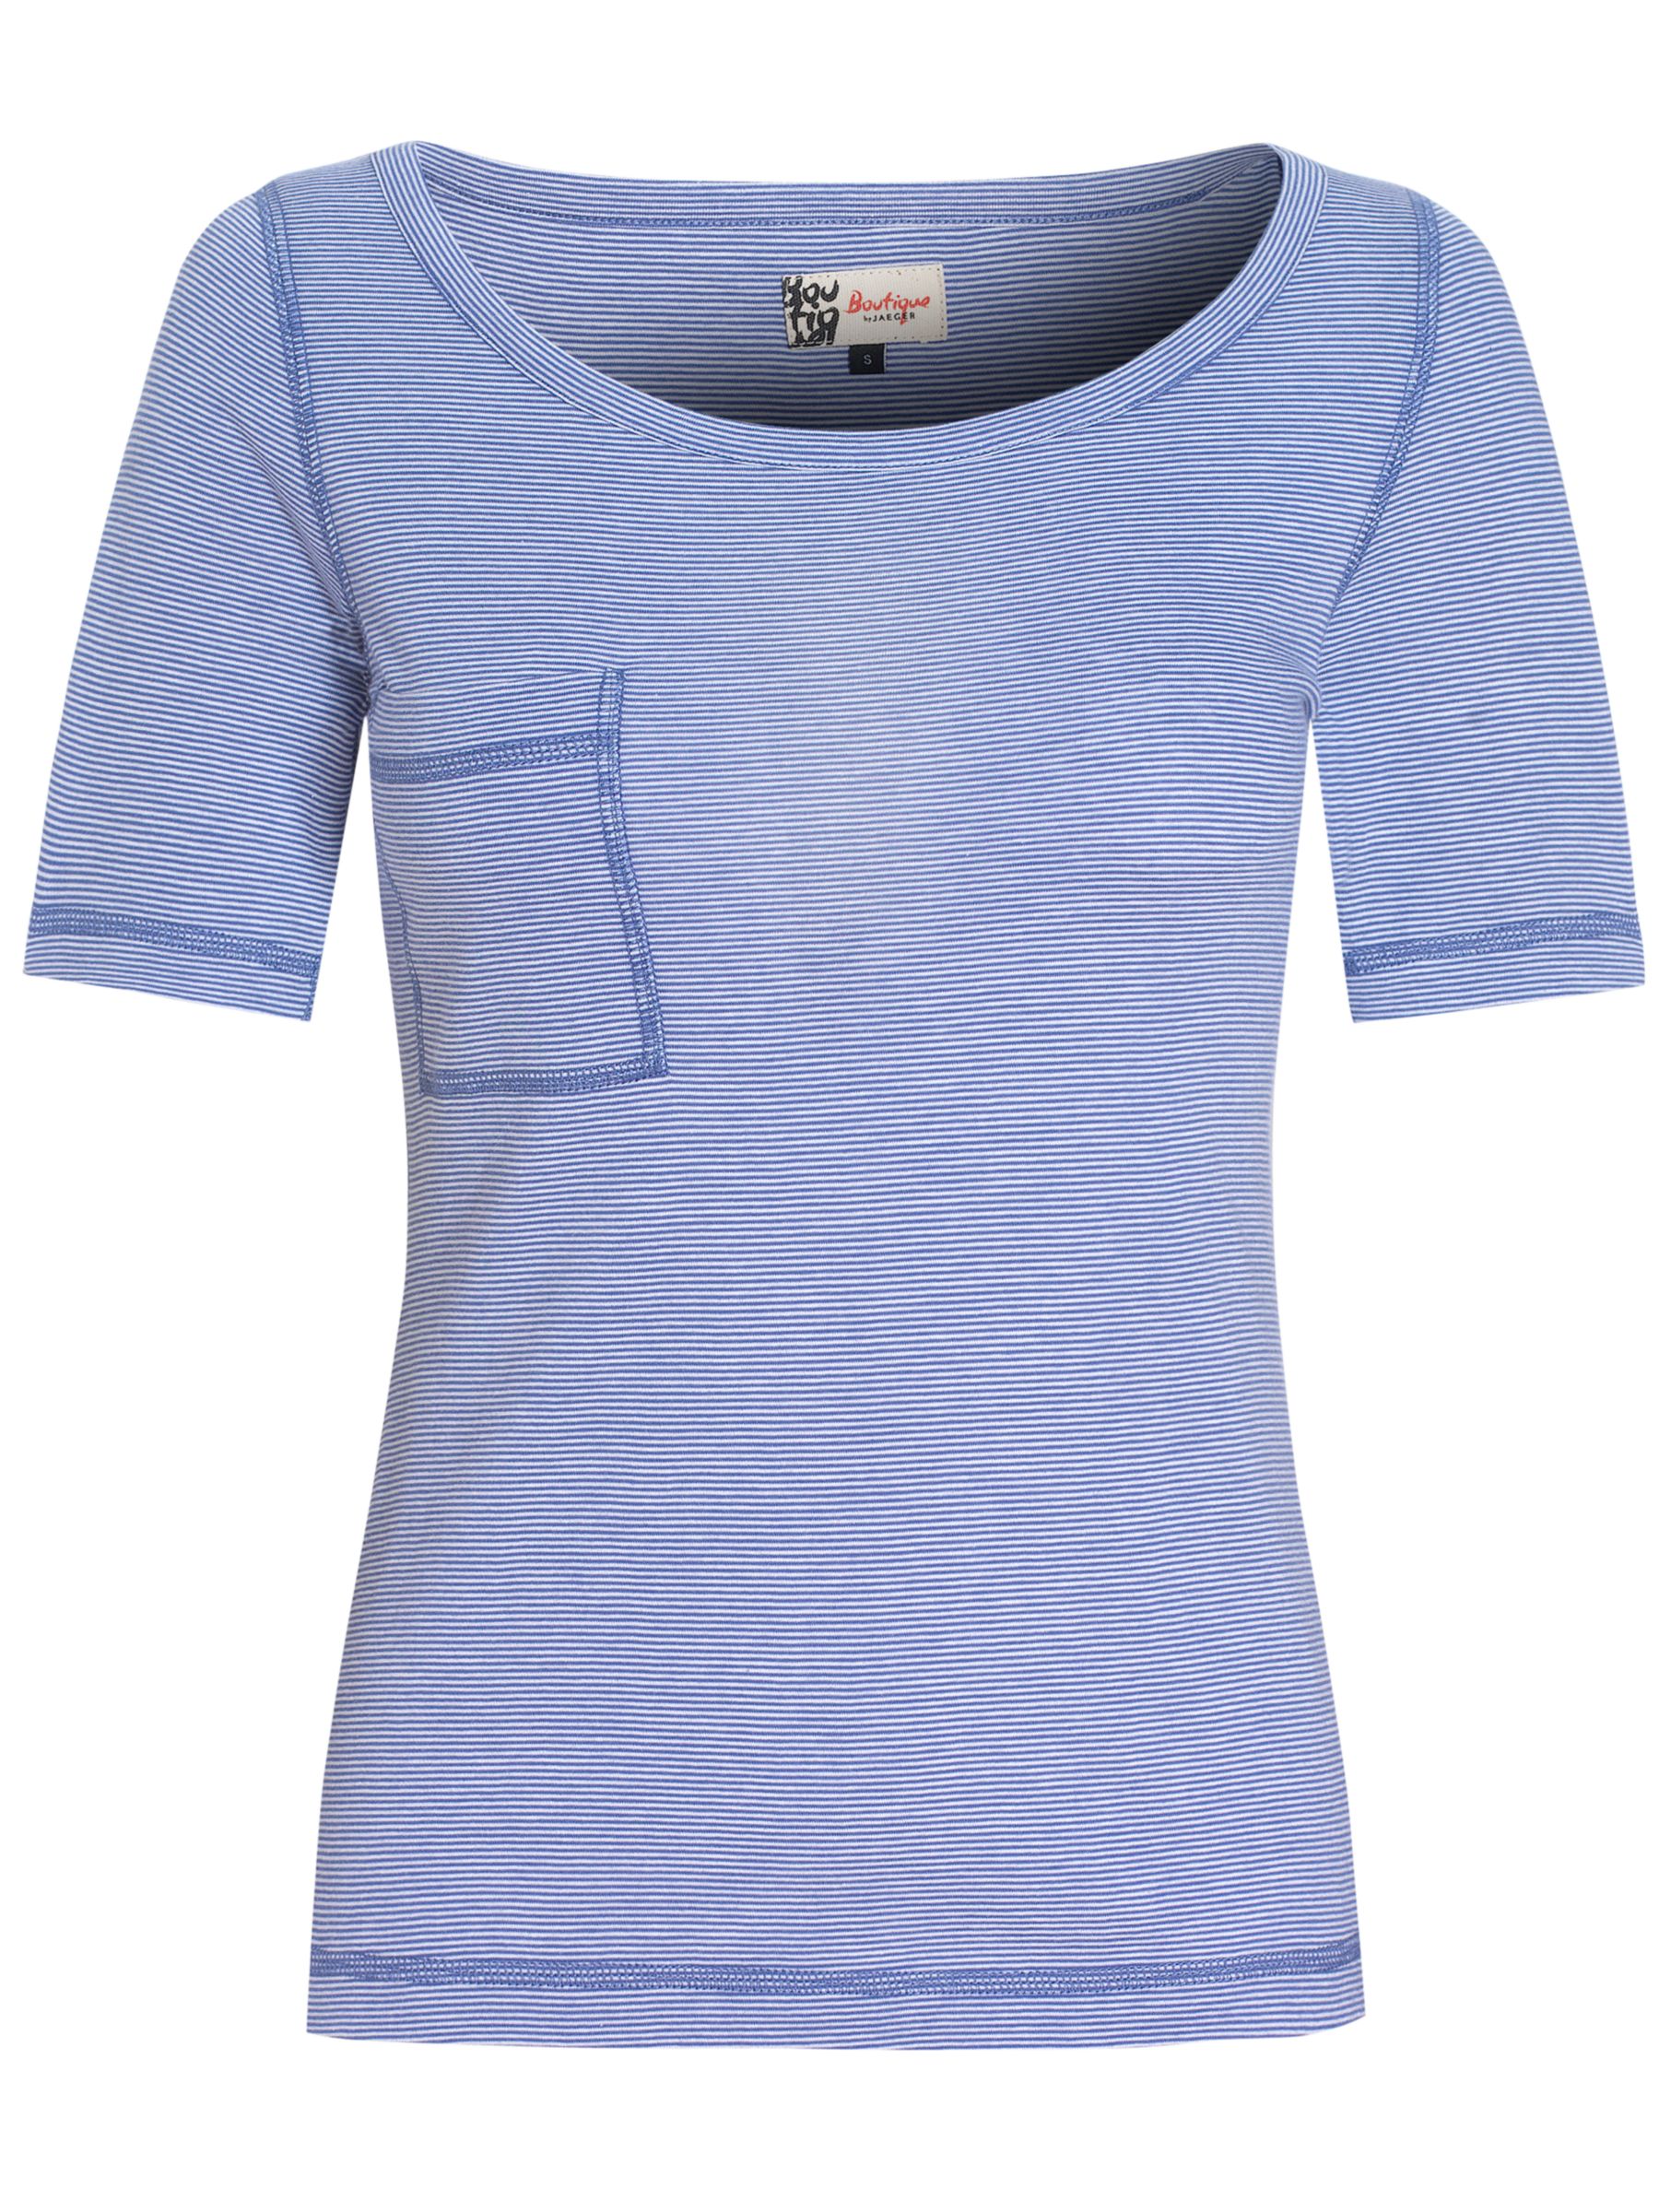 Boutique by Jaeger Mini Stripe T-Shirt, Blue